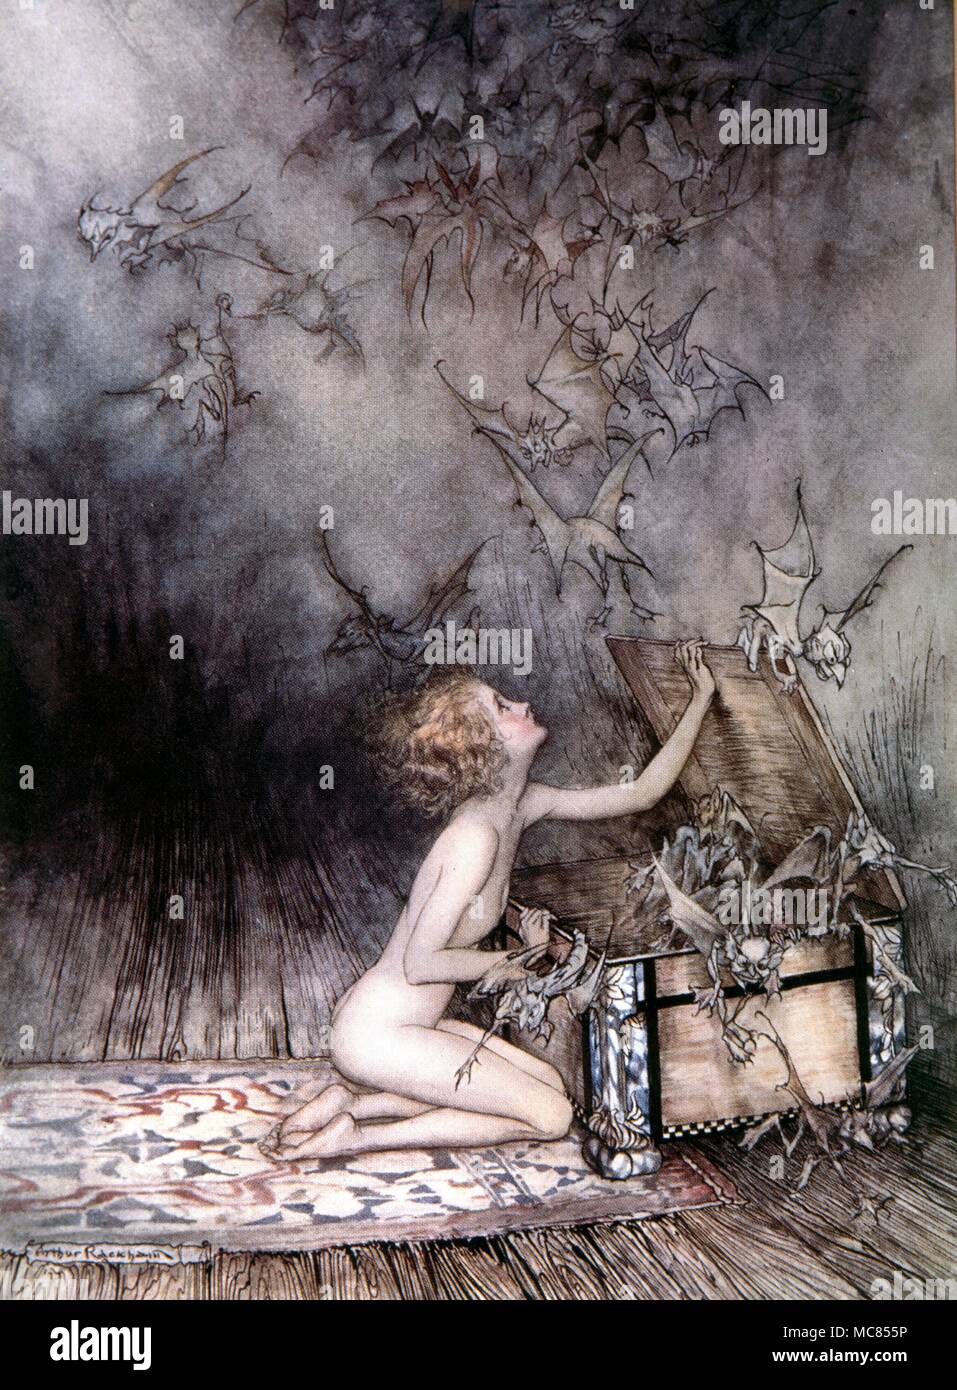 Dämonen und andere Entitäten Flucht aus der Büchse der Pandora. Abbildung von Arthur Rackham, 1905 Stockfoto